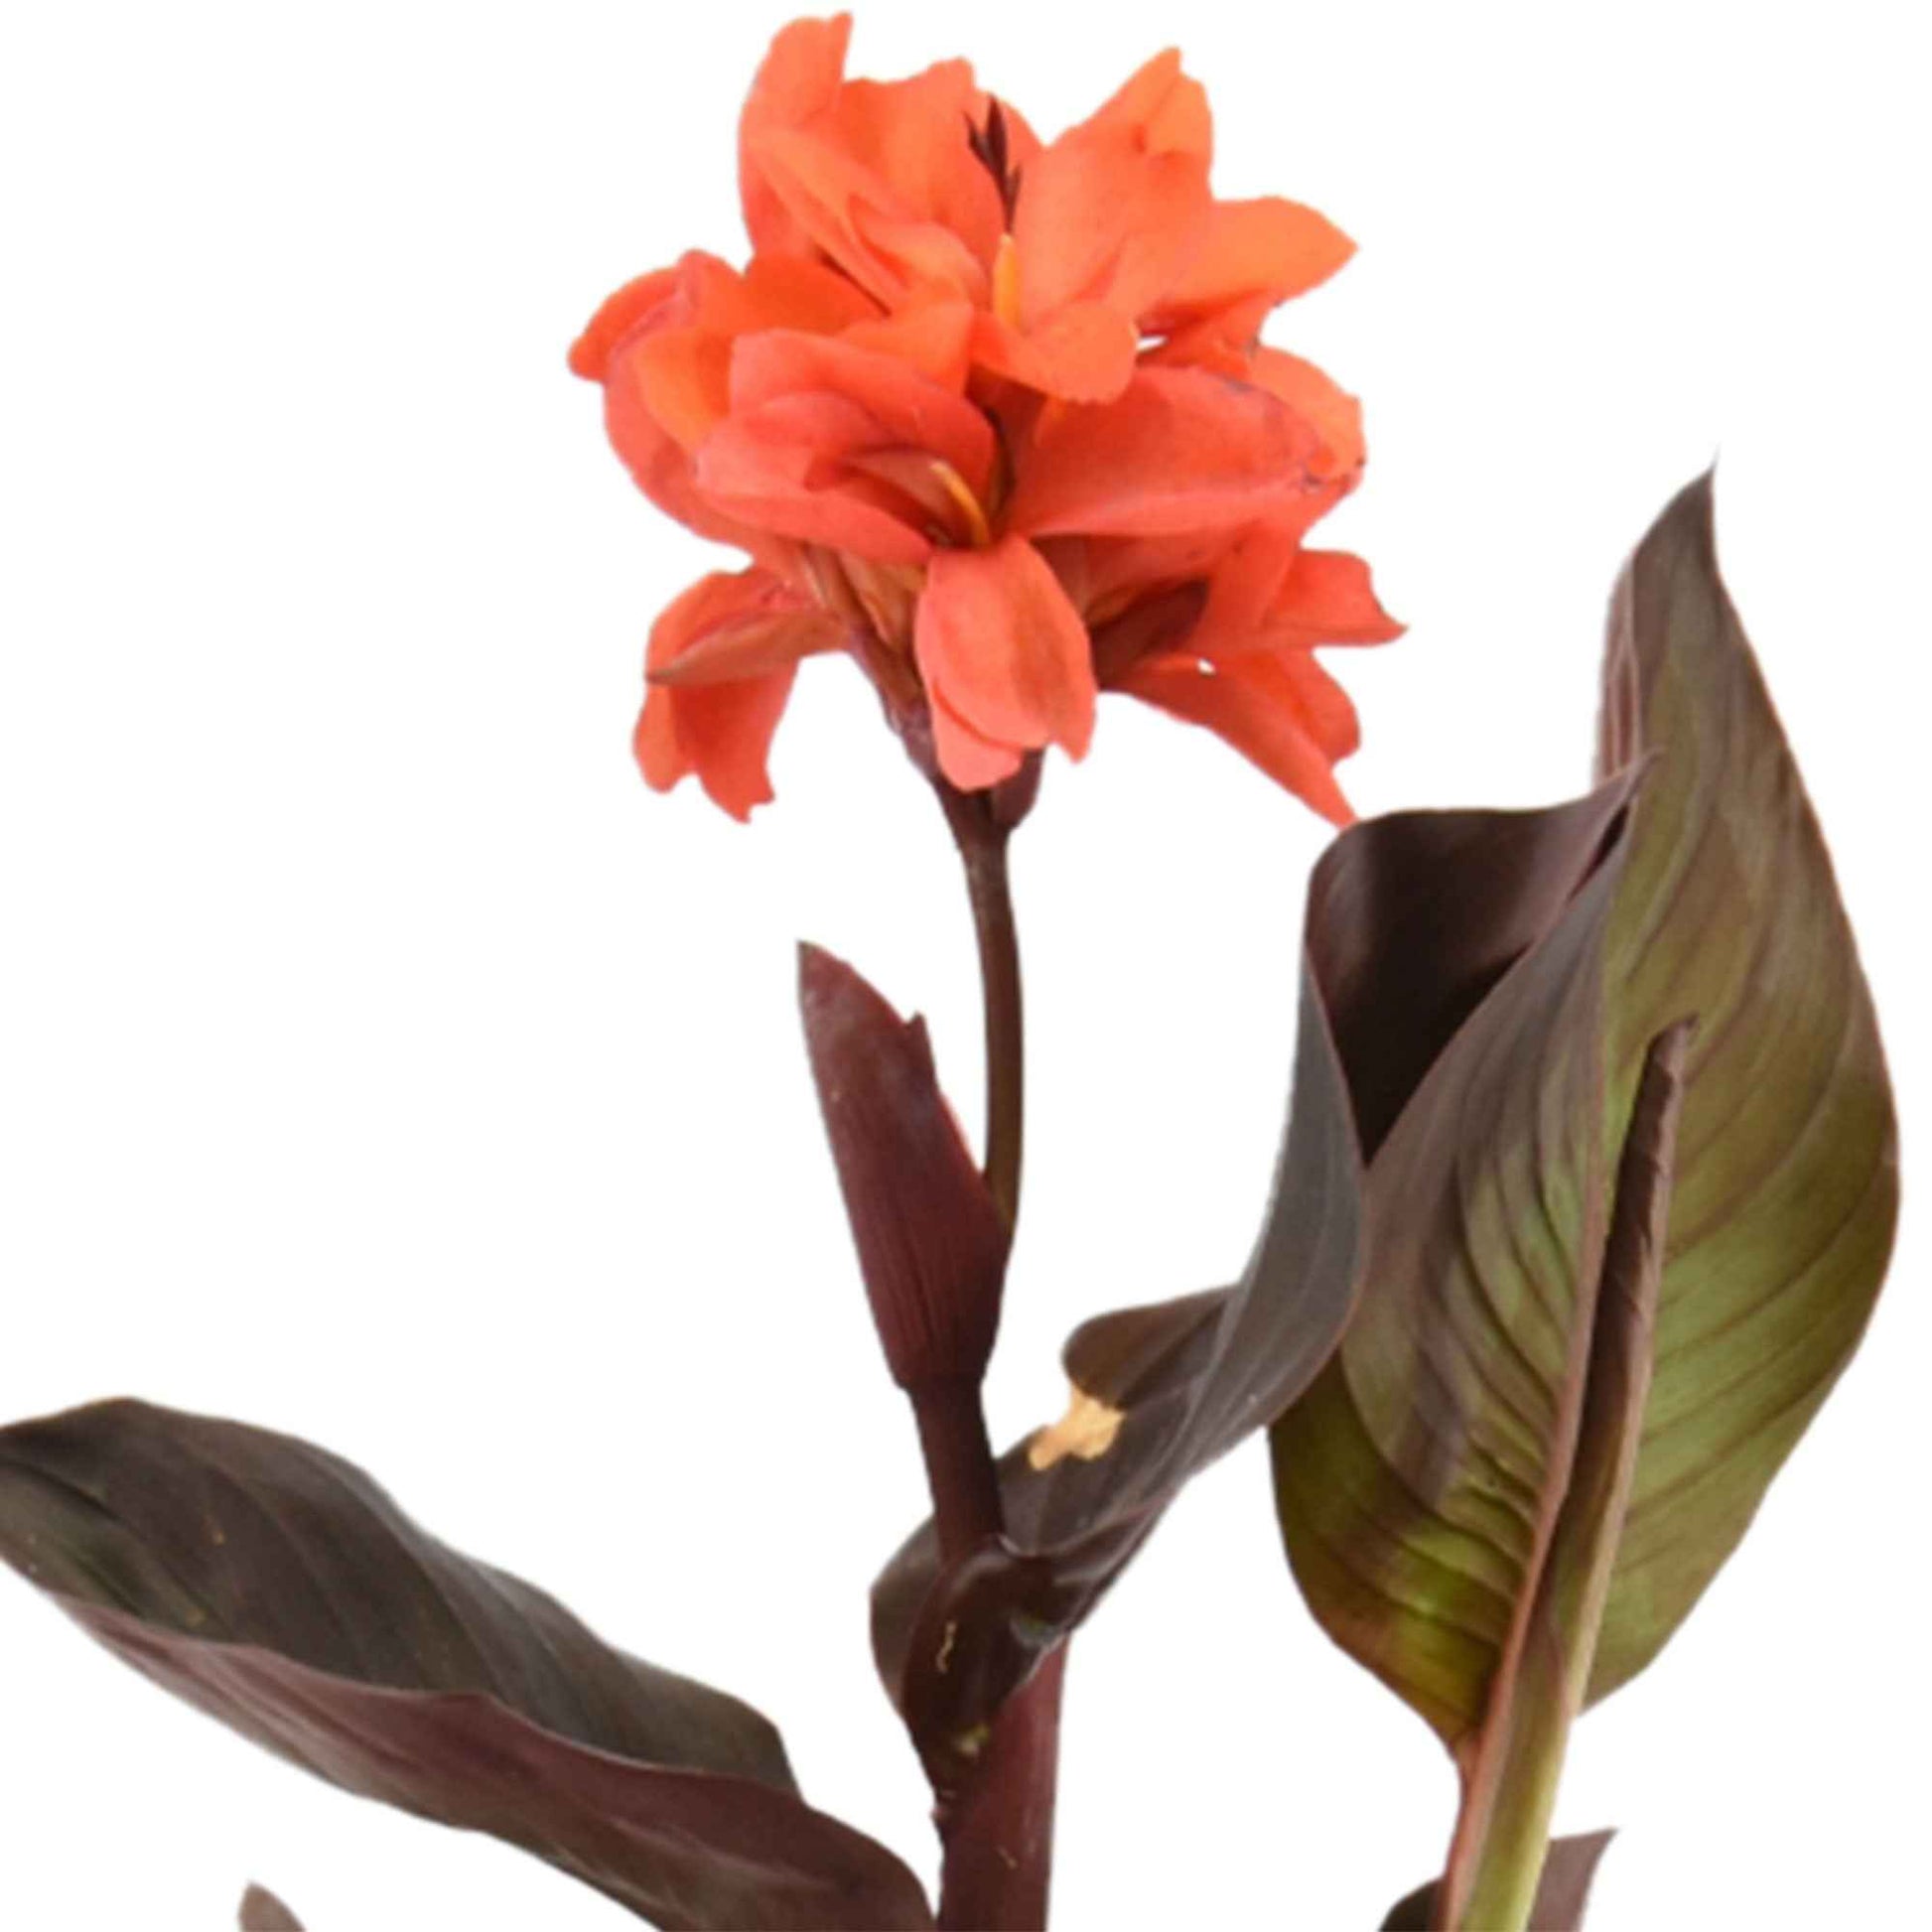 Blumenrohr Canna rot - Sumpfpflanze, Uferpflanze - Naturteich